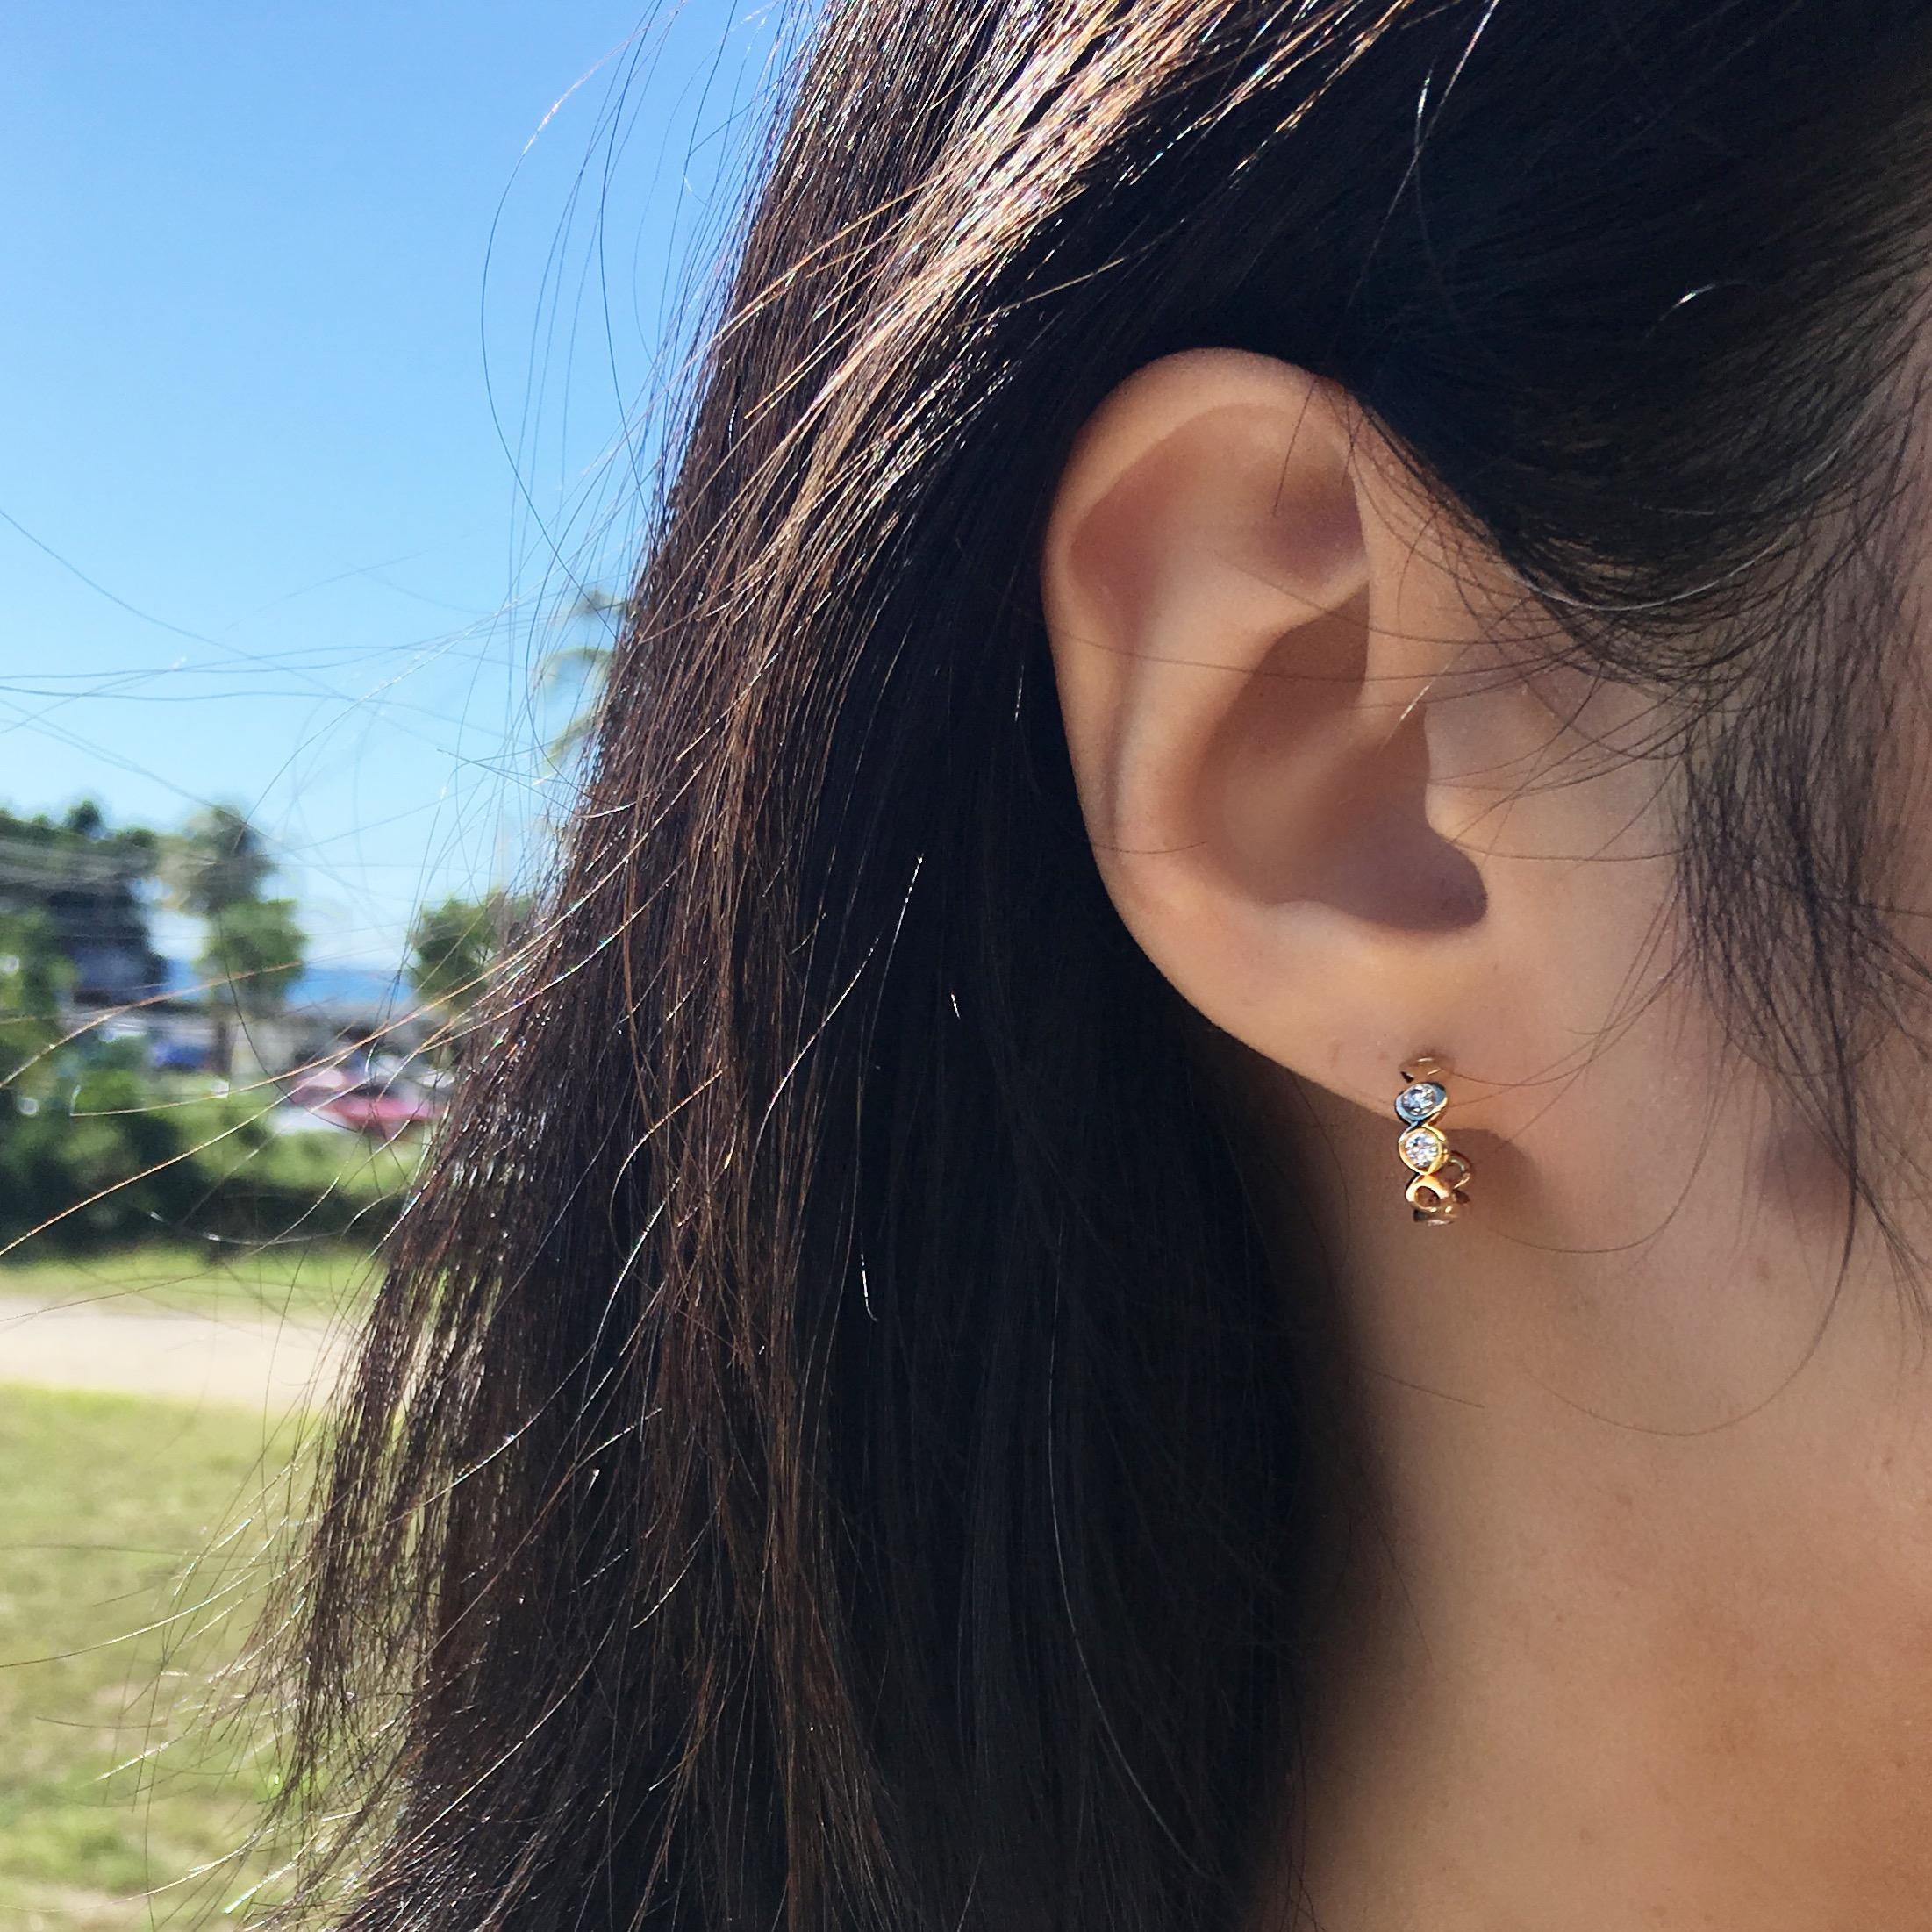 Ces boucles d'oreilles à petits anneaux en diamant sont faciles à porter et peuvent être portées tous les jours avec les cheveux relevés ou détachés.
Trois pièces de diamants sont serties dans les éléments circulaires organiques, signature de Hi